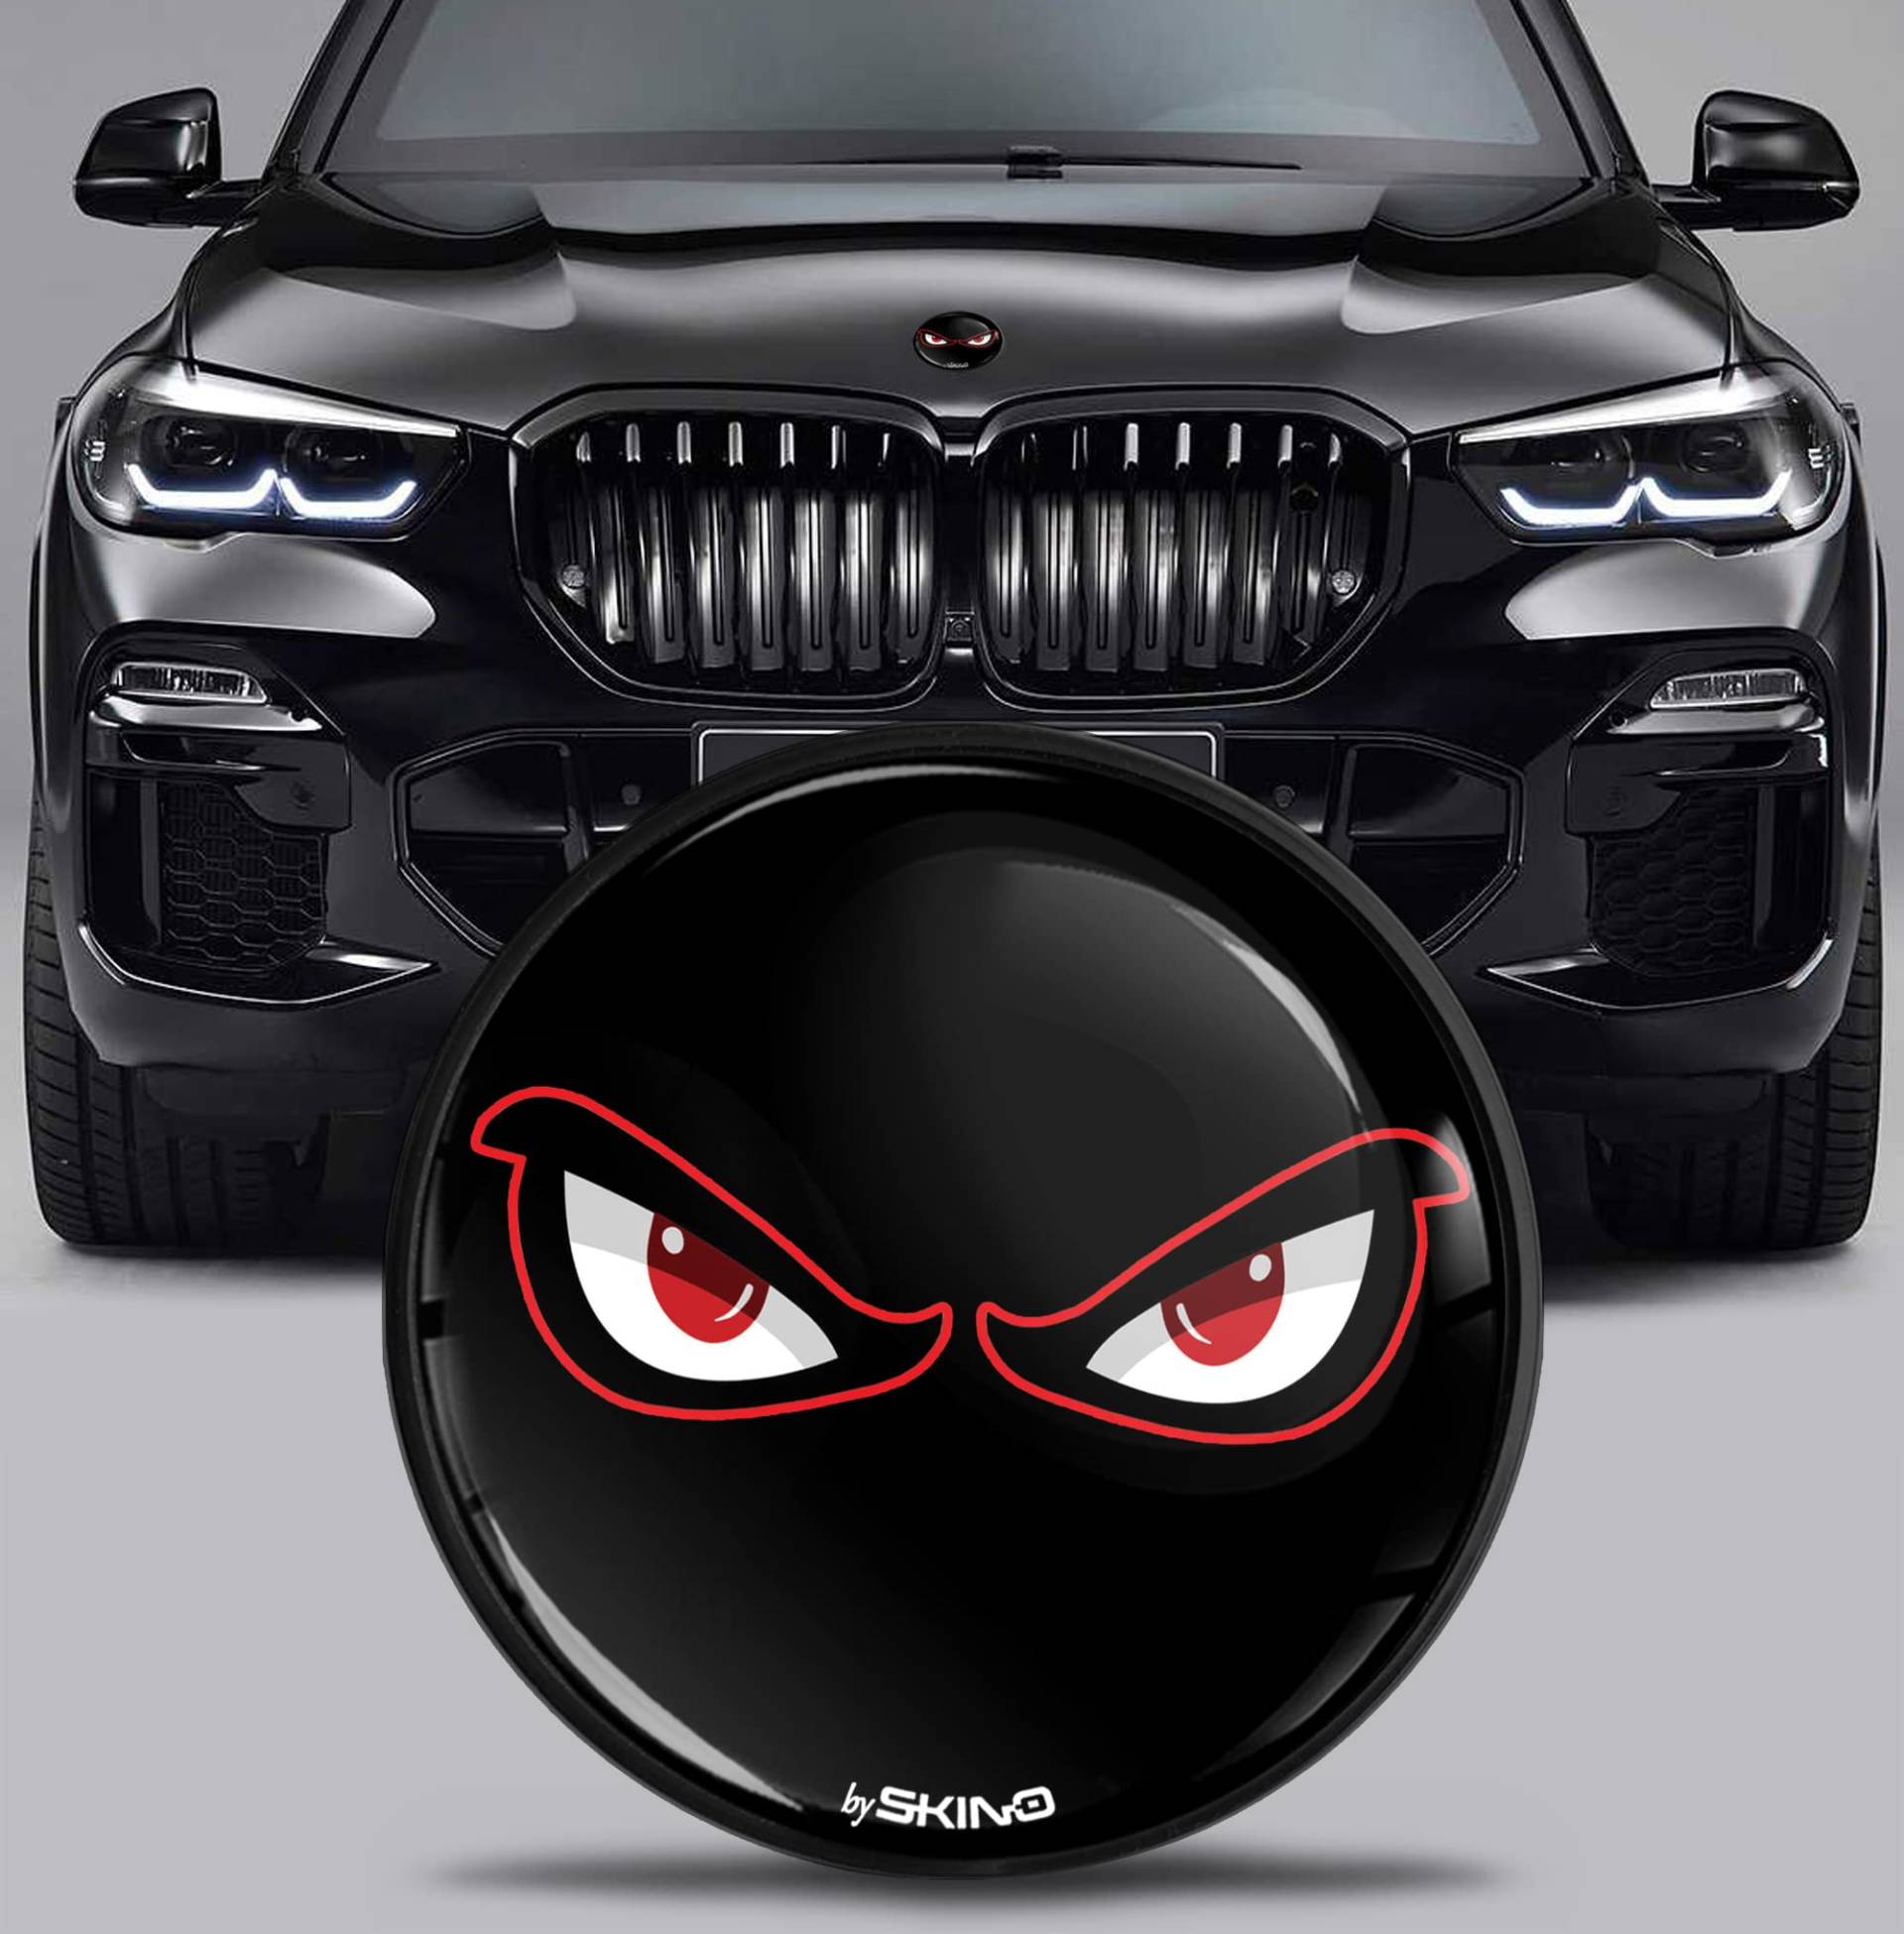 SkinoEu Kompatibel mit BMW Emblem Plakette 51767288752 82mm Durchmesser für Motorhaube/Kofferraum 1er 2er 3er 4er 5er 7er 8er X1 X2 X3 X4 X5 X6 X7 No Fear Schwarz EX 9 von SkinoEu